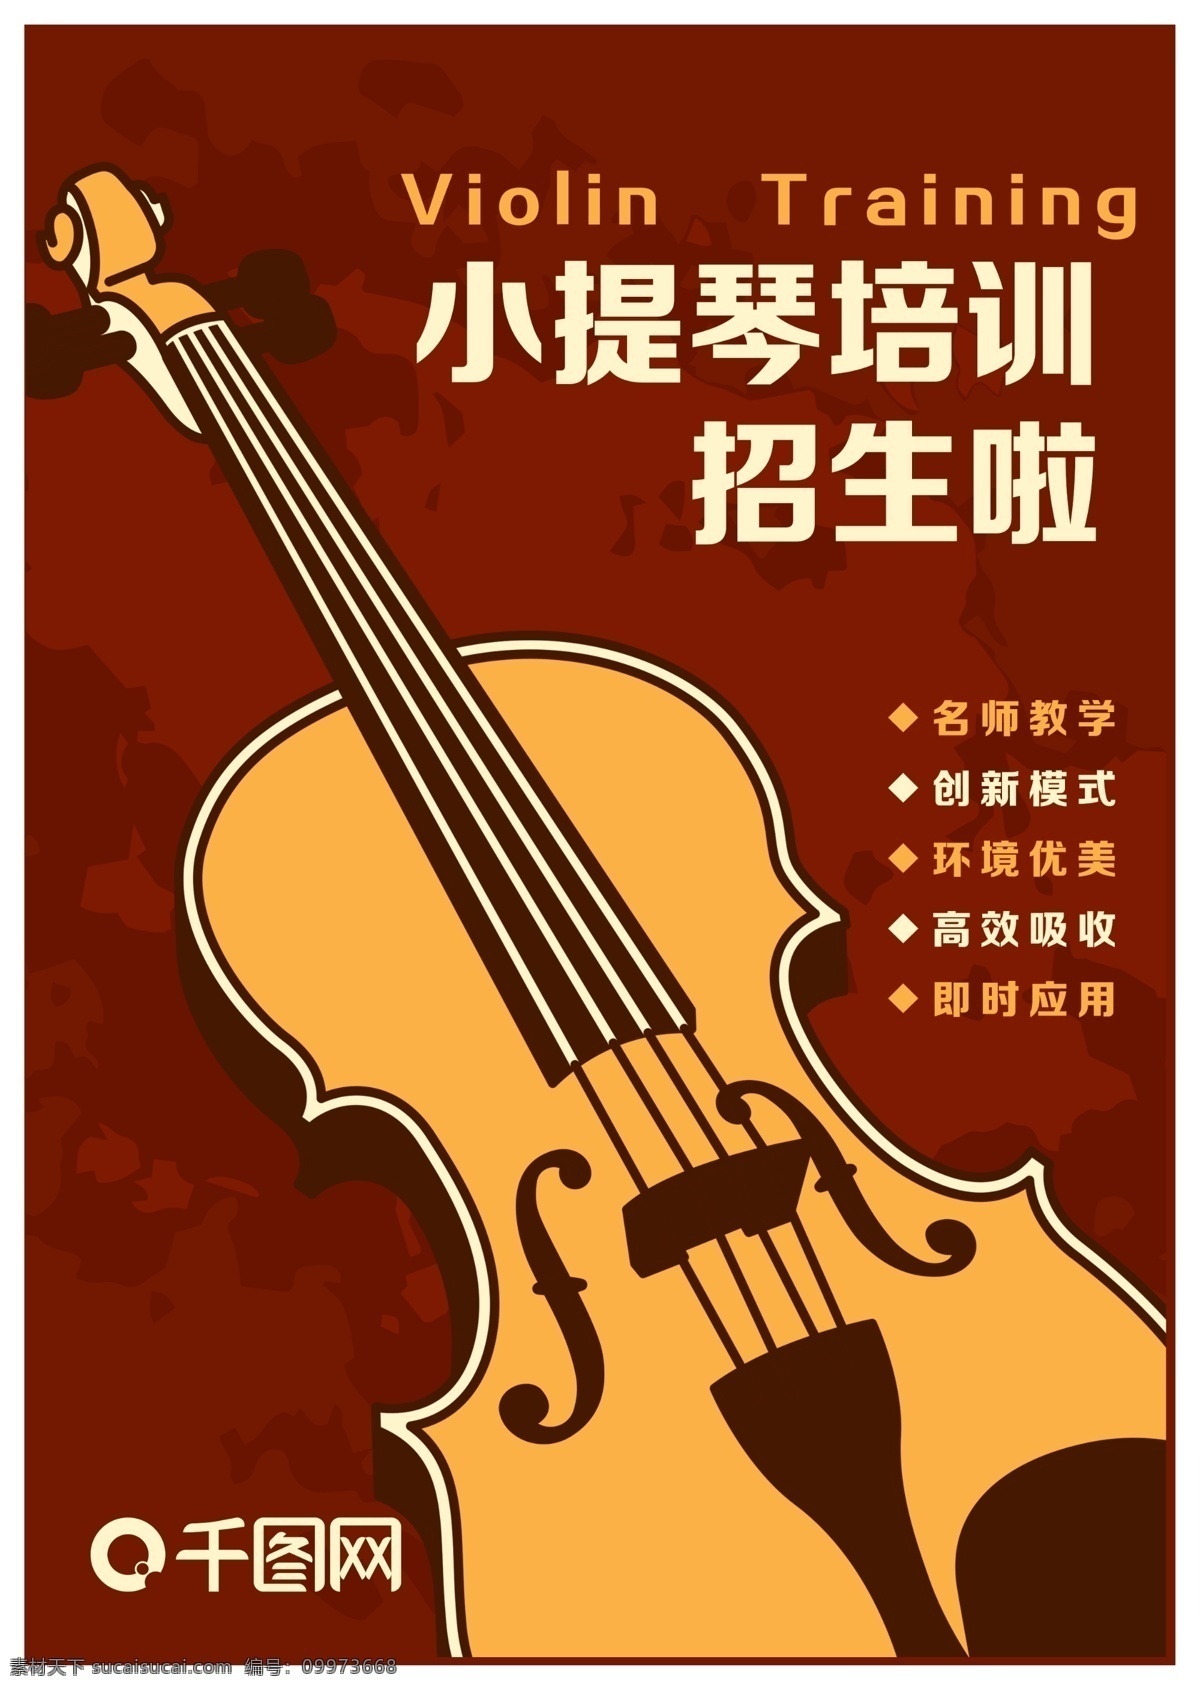 小提琴 工作室 培训 招生 宣传单 宣传